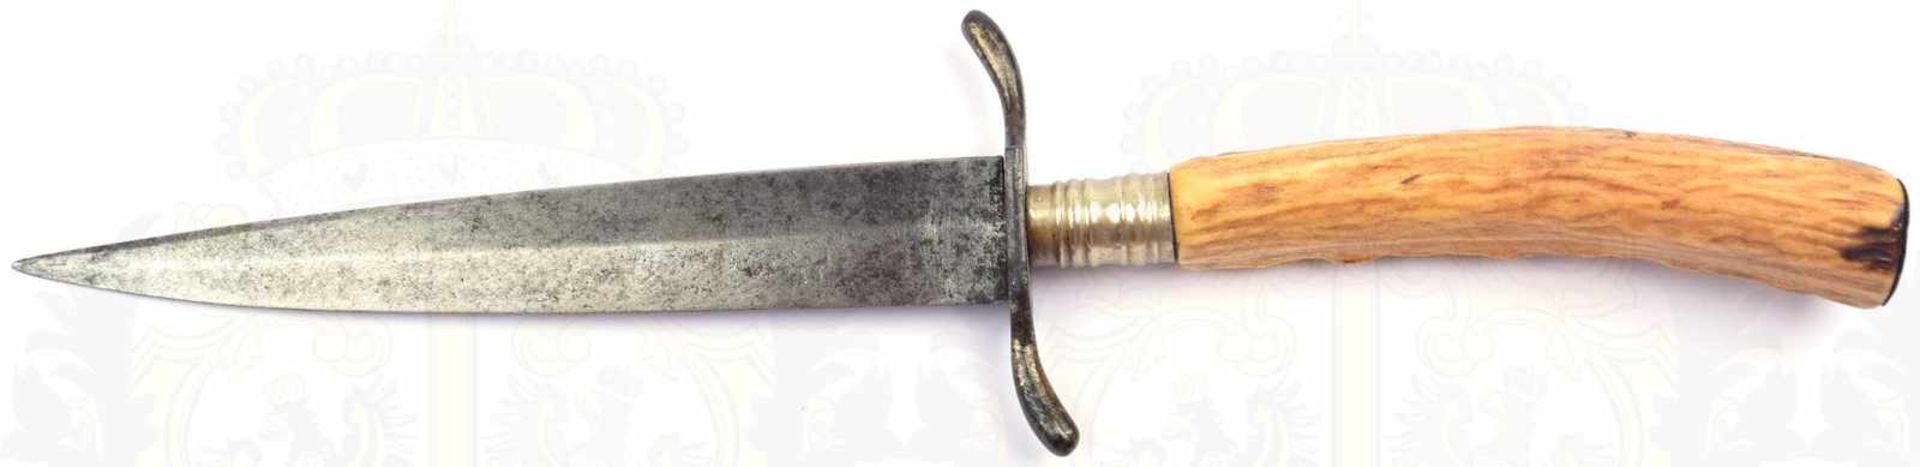 GRABENDOLCH, privates Stück, beschliffene Klinge m. Mittelgrat, L. 15cm, geschwungenes Parierstück - Bild 3 aus 3